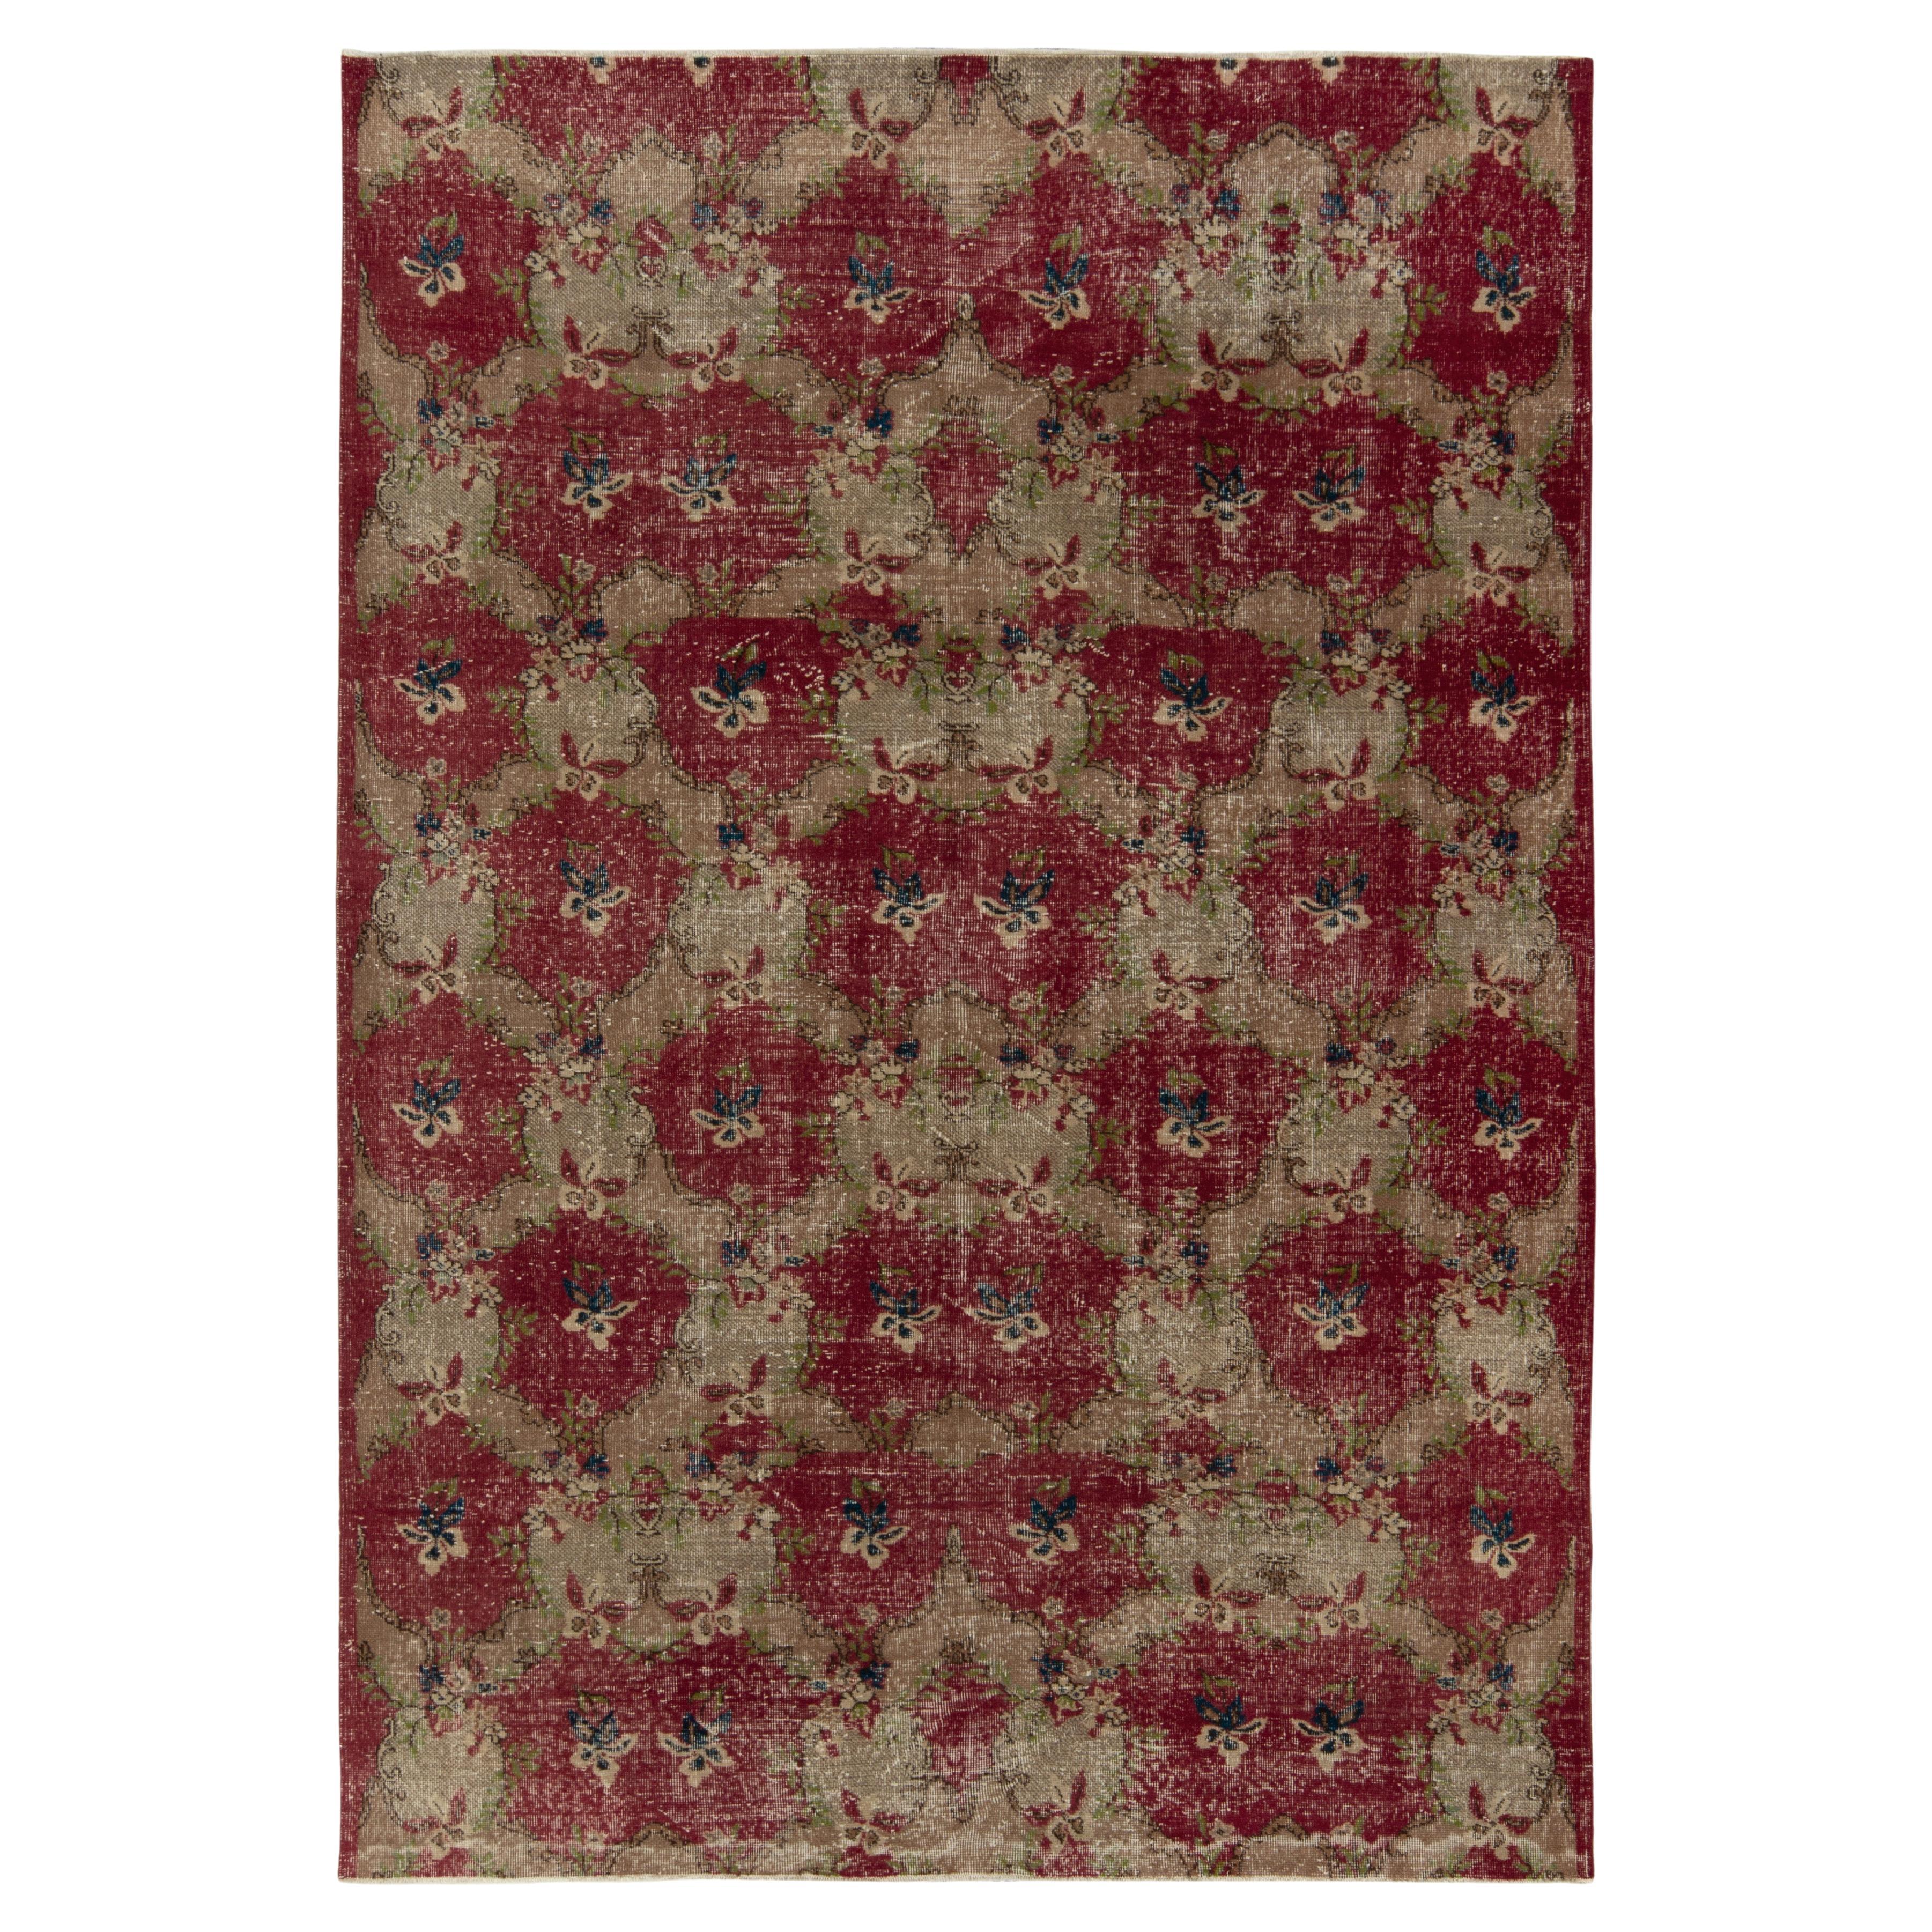 Vintage-Teppich im Used-Stil aus den 1960er Jahren mit roten, beigen und grünen Blumenmustern von Teppich & Kelim